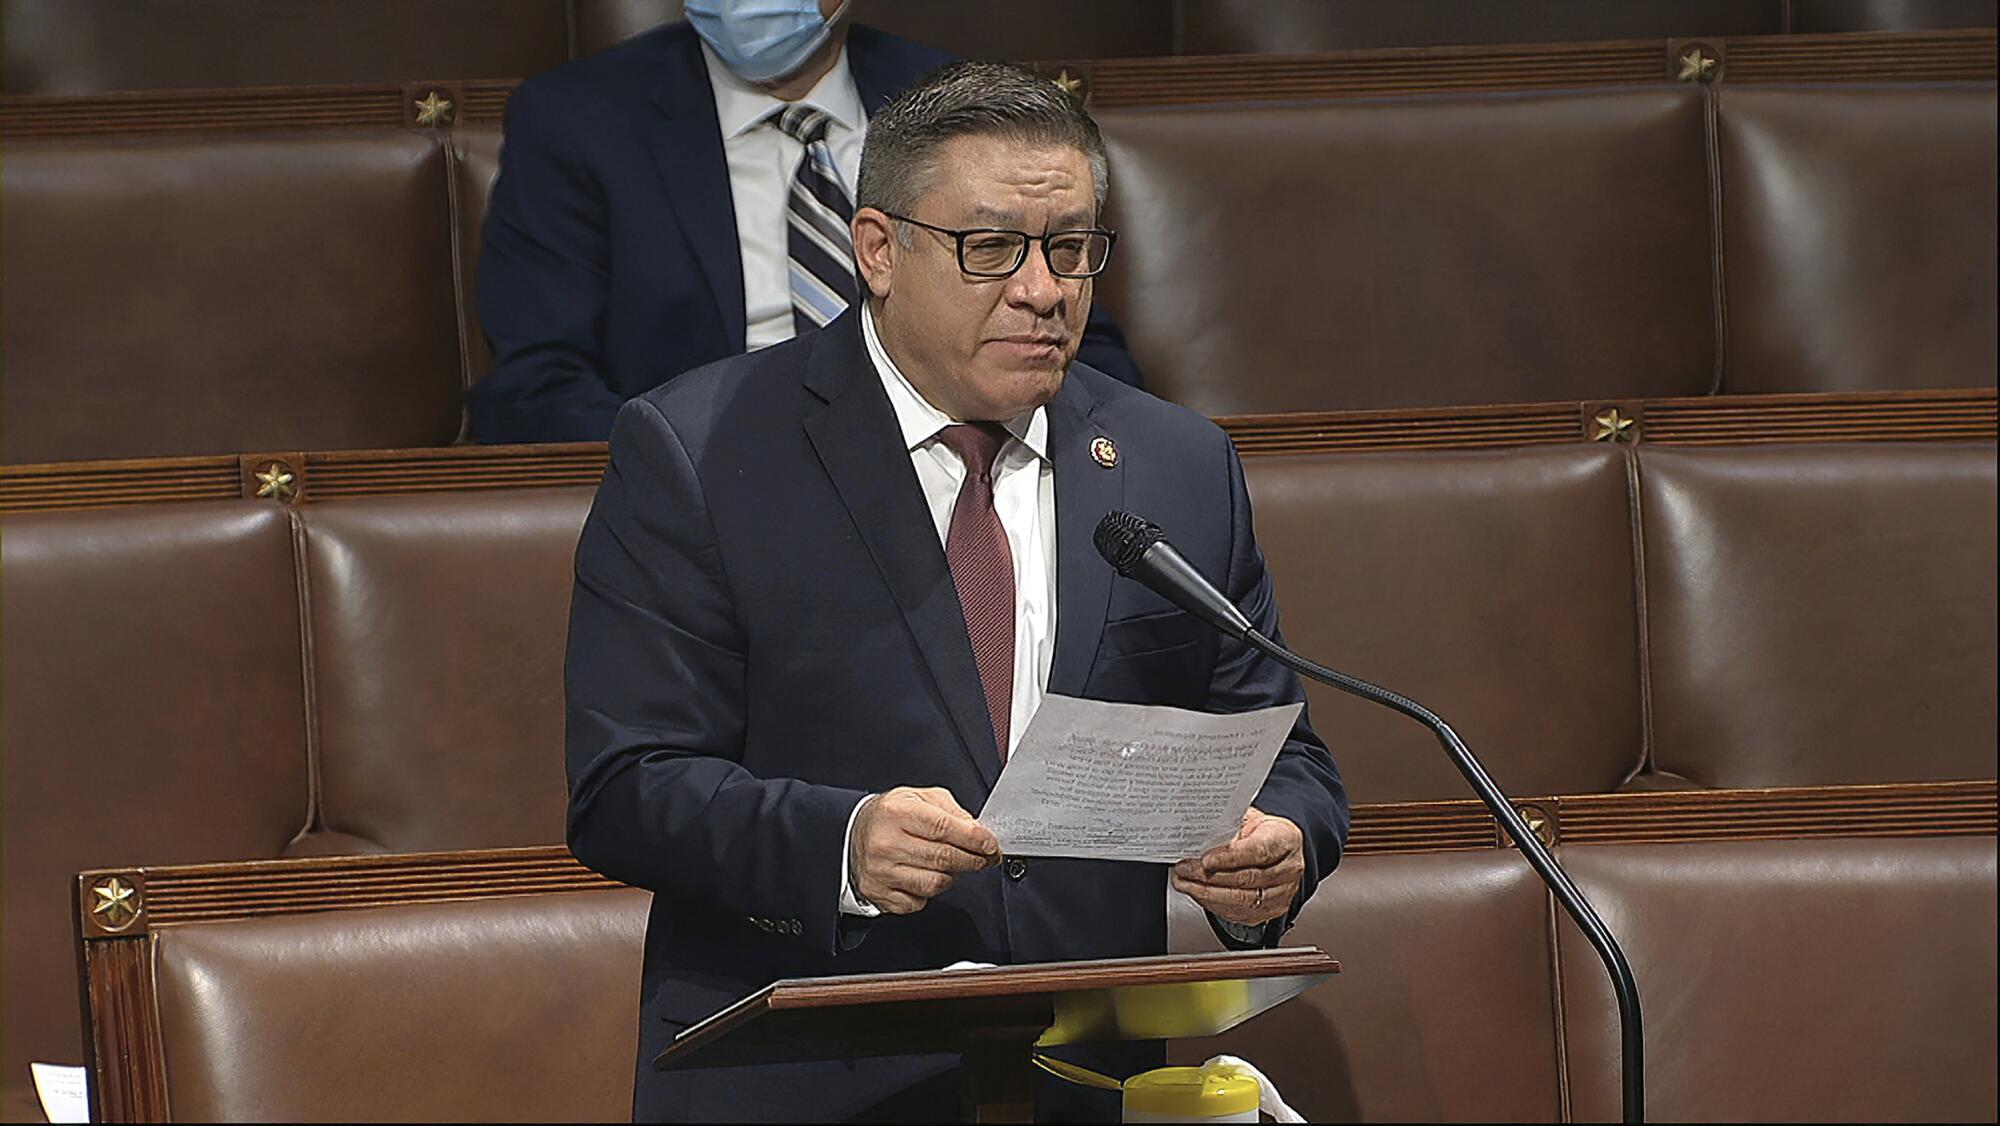   Um homem segurando um papel fala no plenário da Câmara dos Representantes, no Capitólio dos EUA, em Washington.